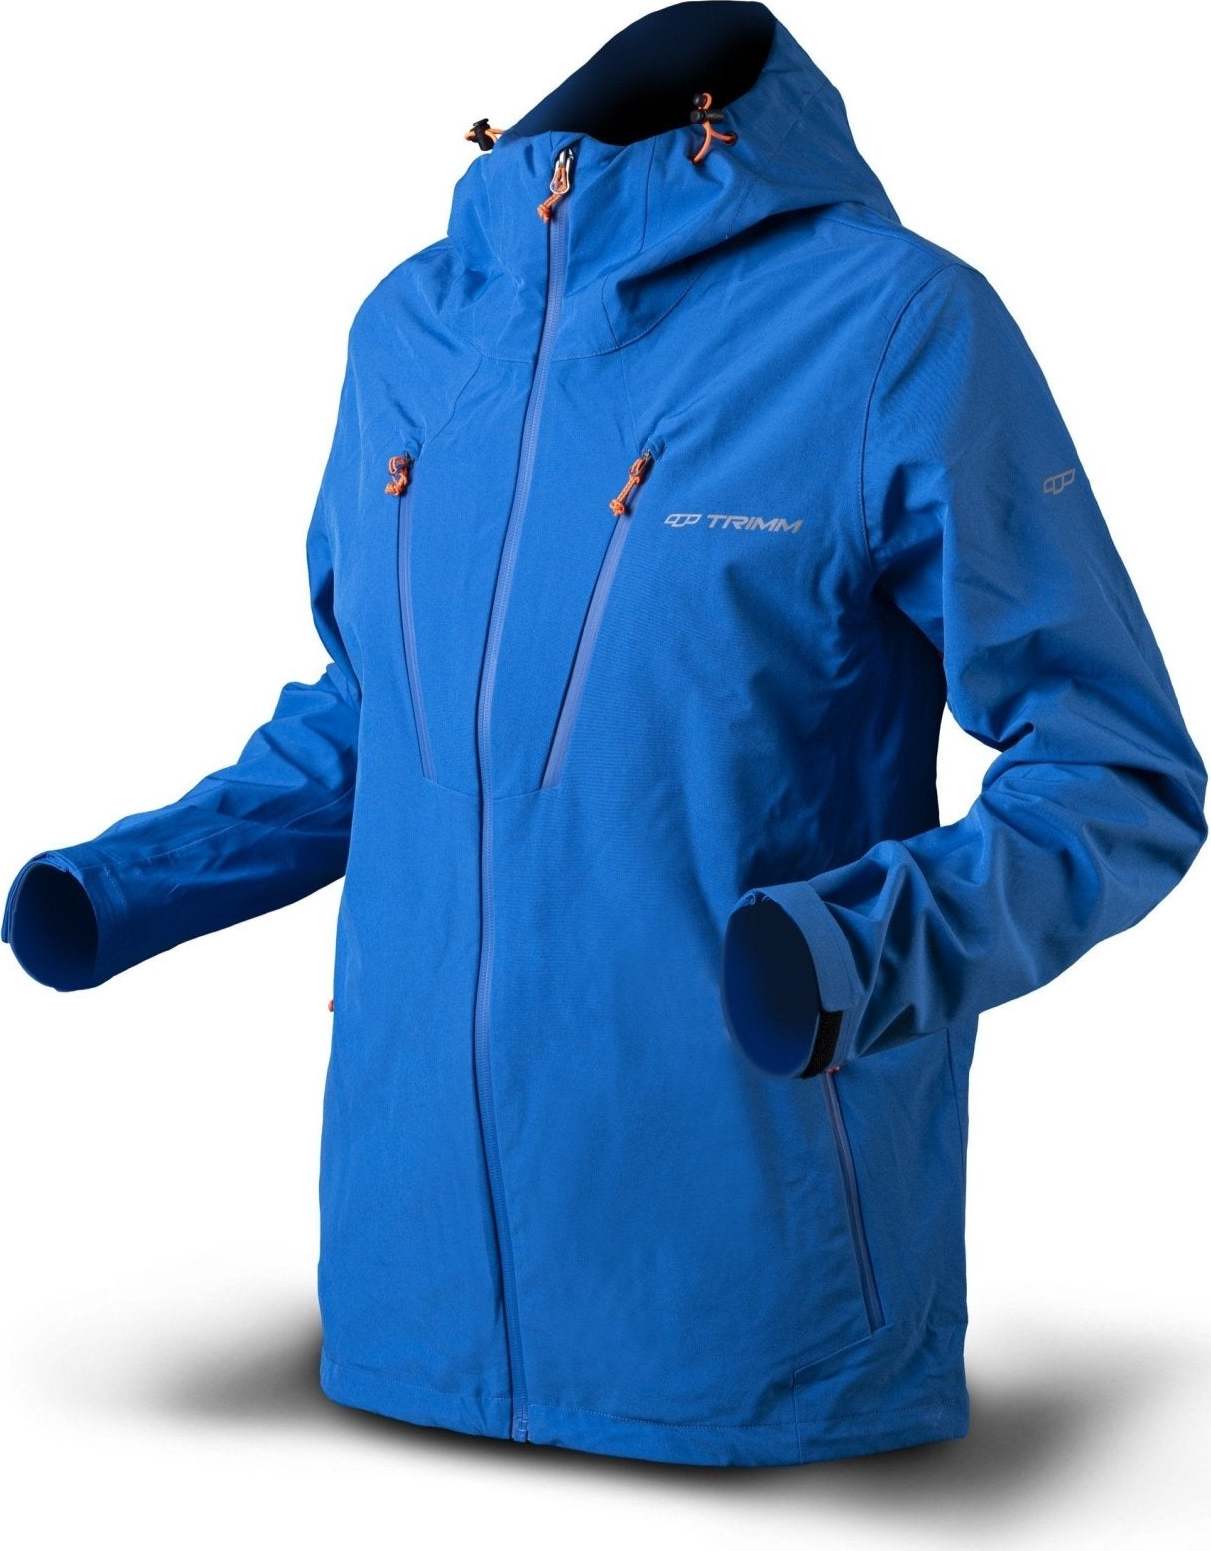 Pánská nepromokavá bunda TRIMM Intense světle modrá Velikost: L, Barva: jeans blue/ orange